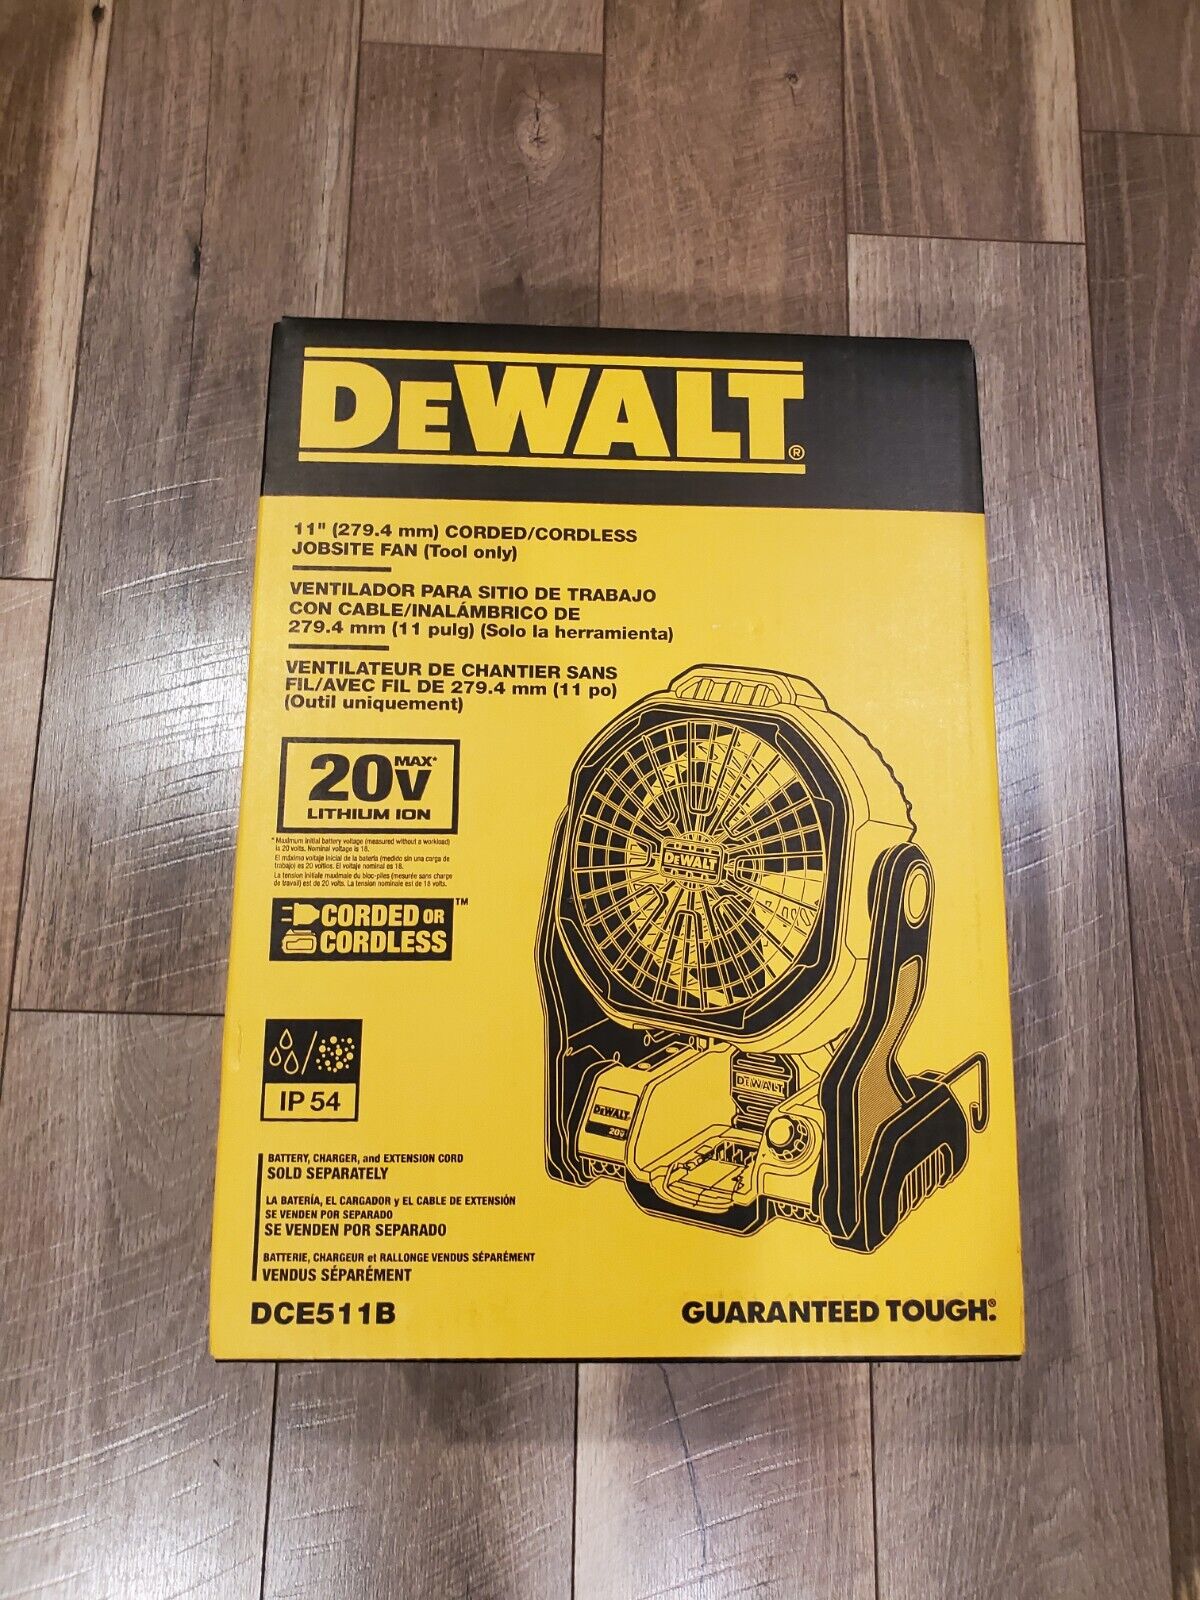 DEWALT+DCE511B+11+inch+Corded%2FCordless+Jobsite+Fan for sale online eBay